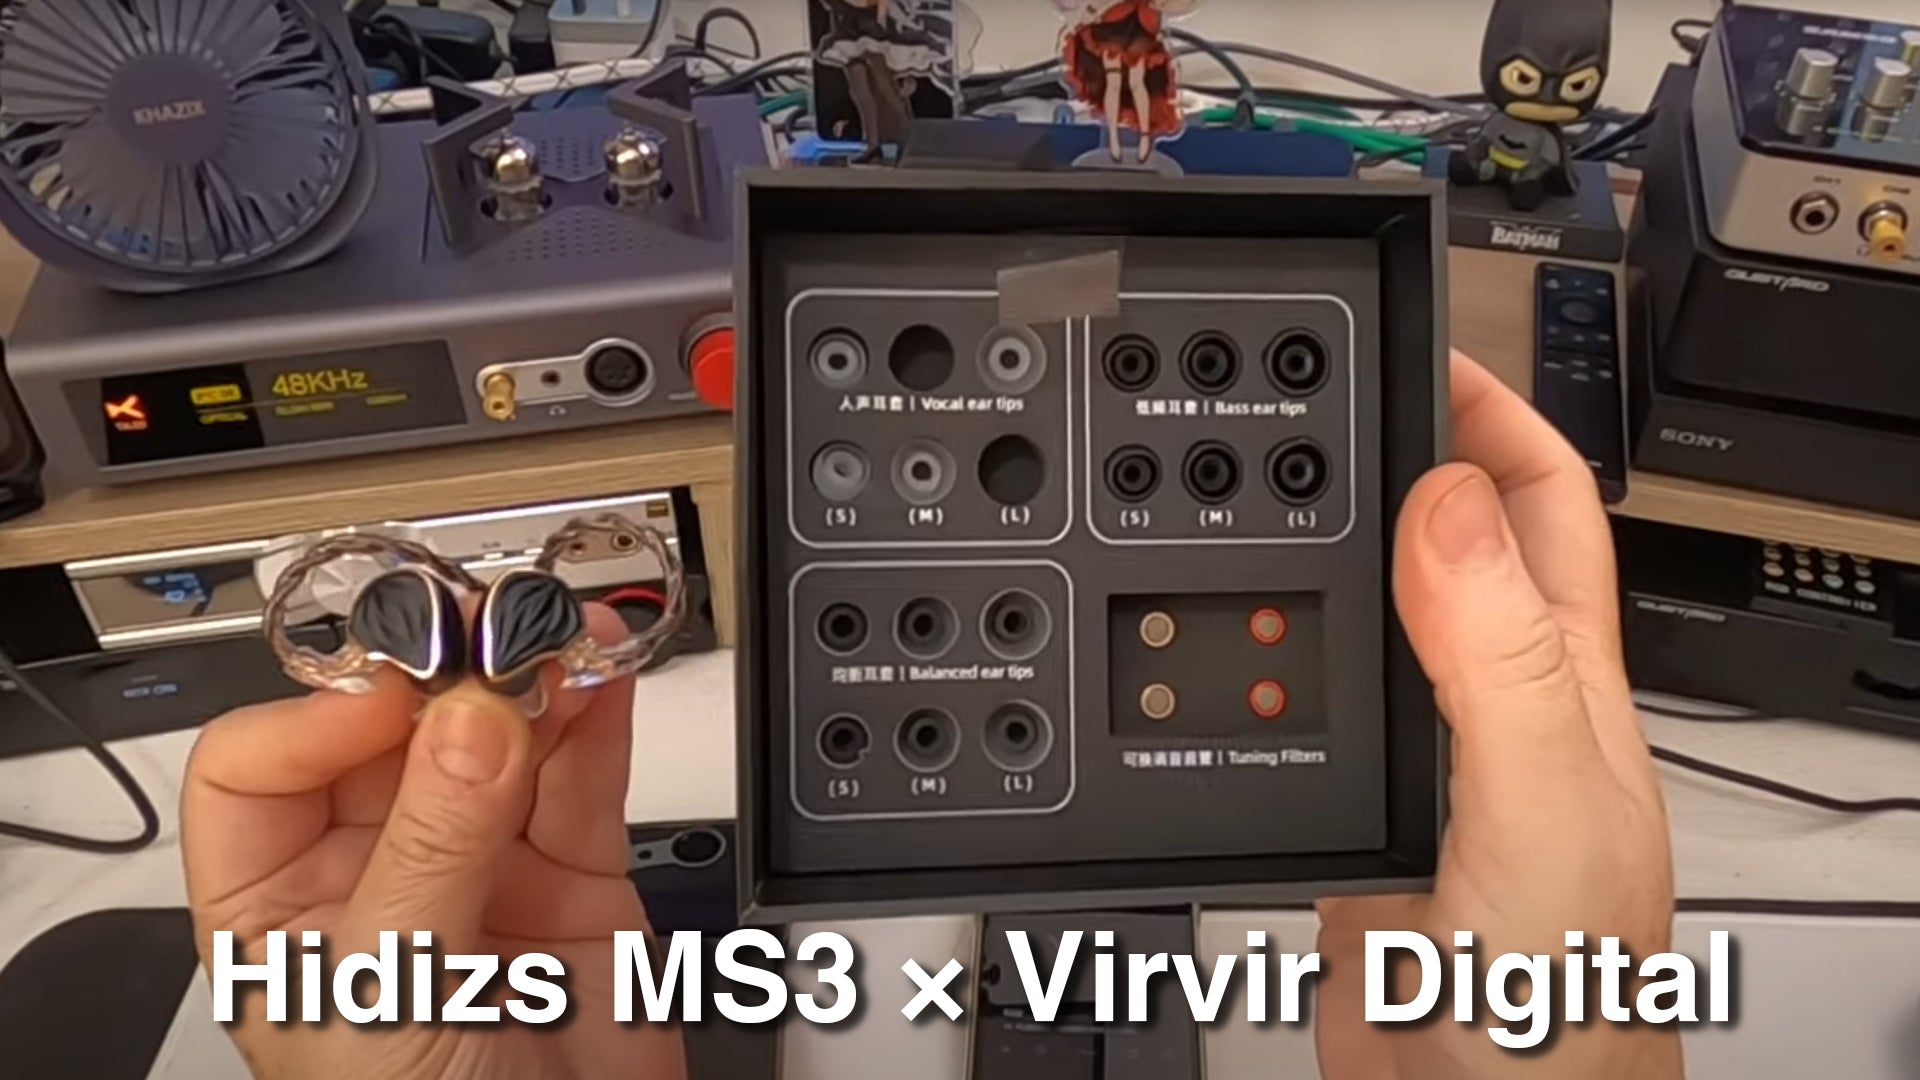 Hidizs MS3 Review - Virvir Digital